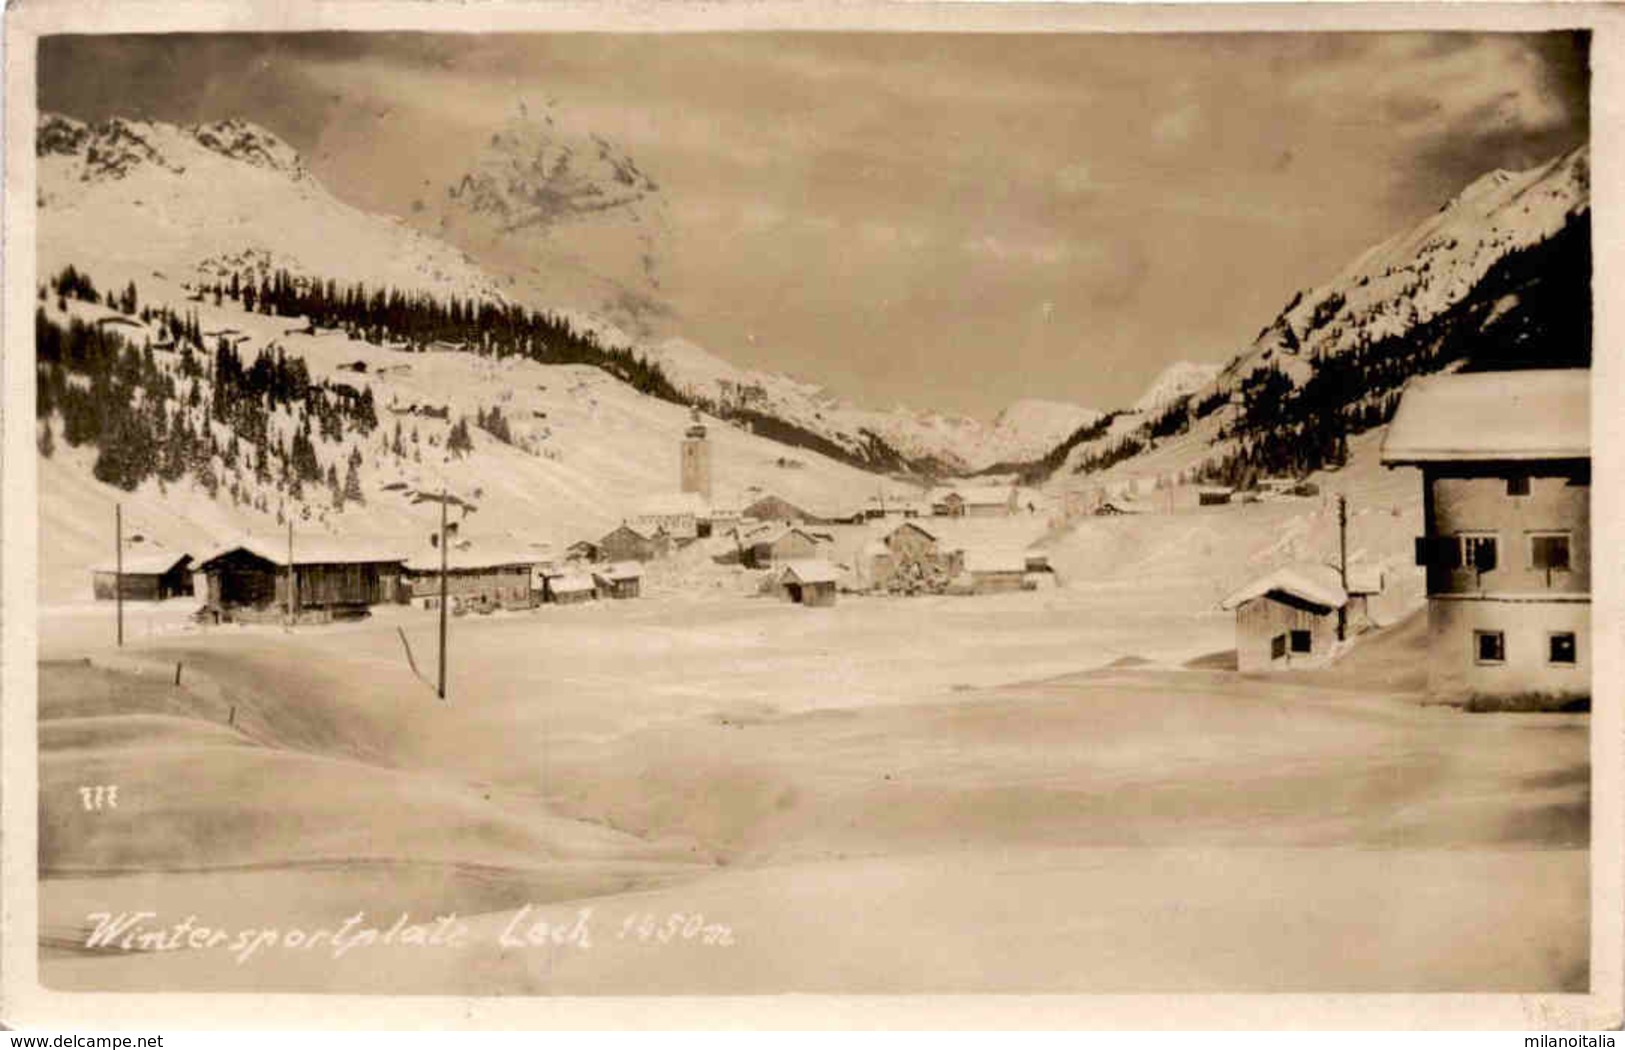 Wintersportplatz Lech 1450 M (777) * 2. 4. 1929 - Lech